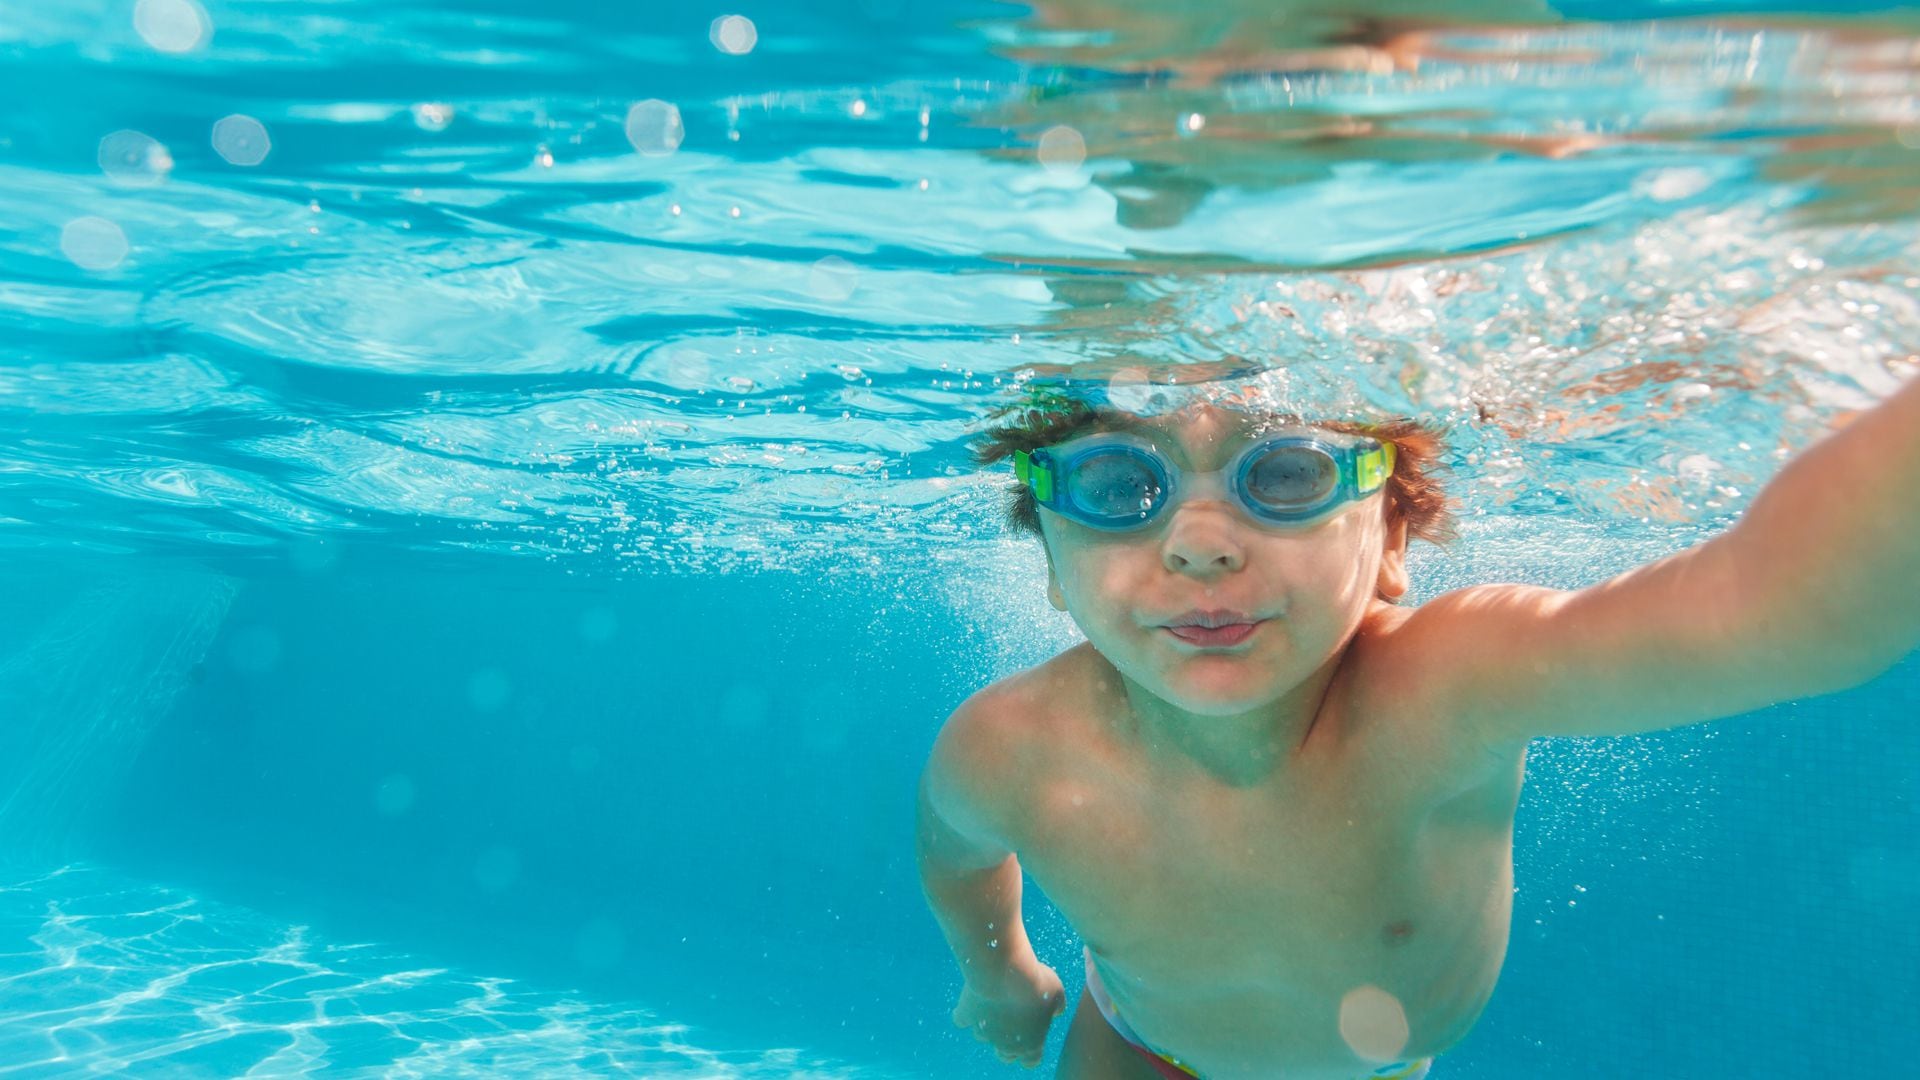 Los menores de 5 años suelen presentar los mayores índices de mortalidad por ahogamiento en todo el mundo (iStock)